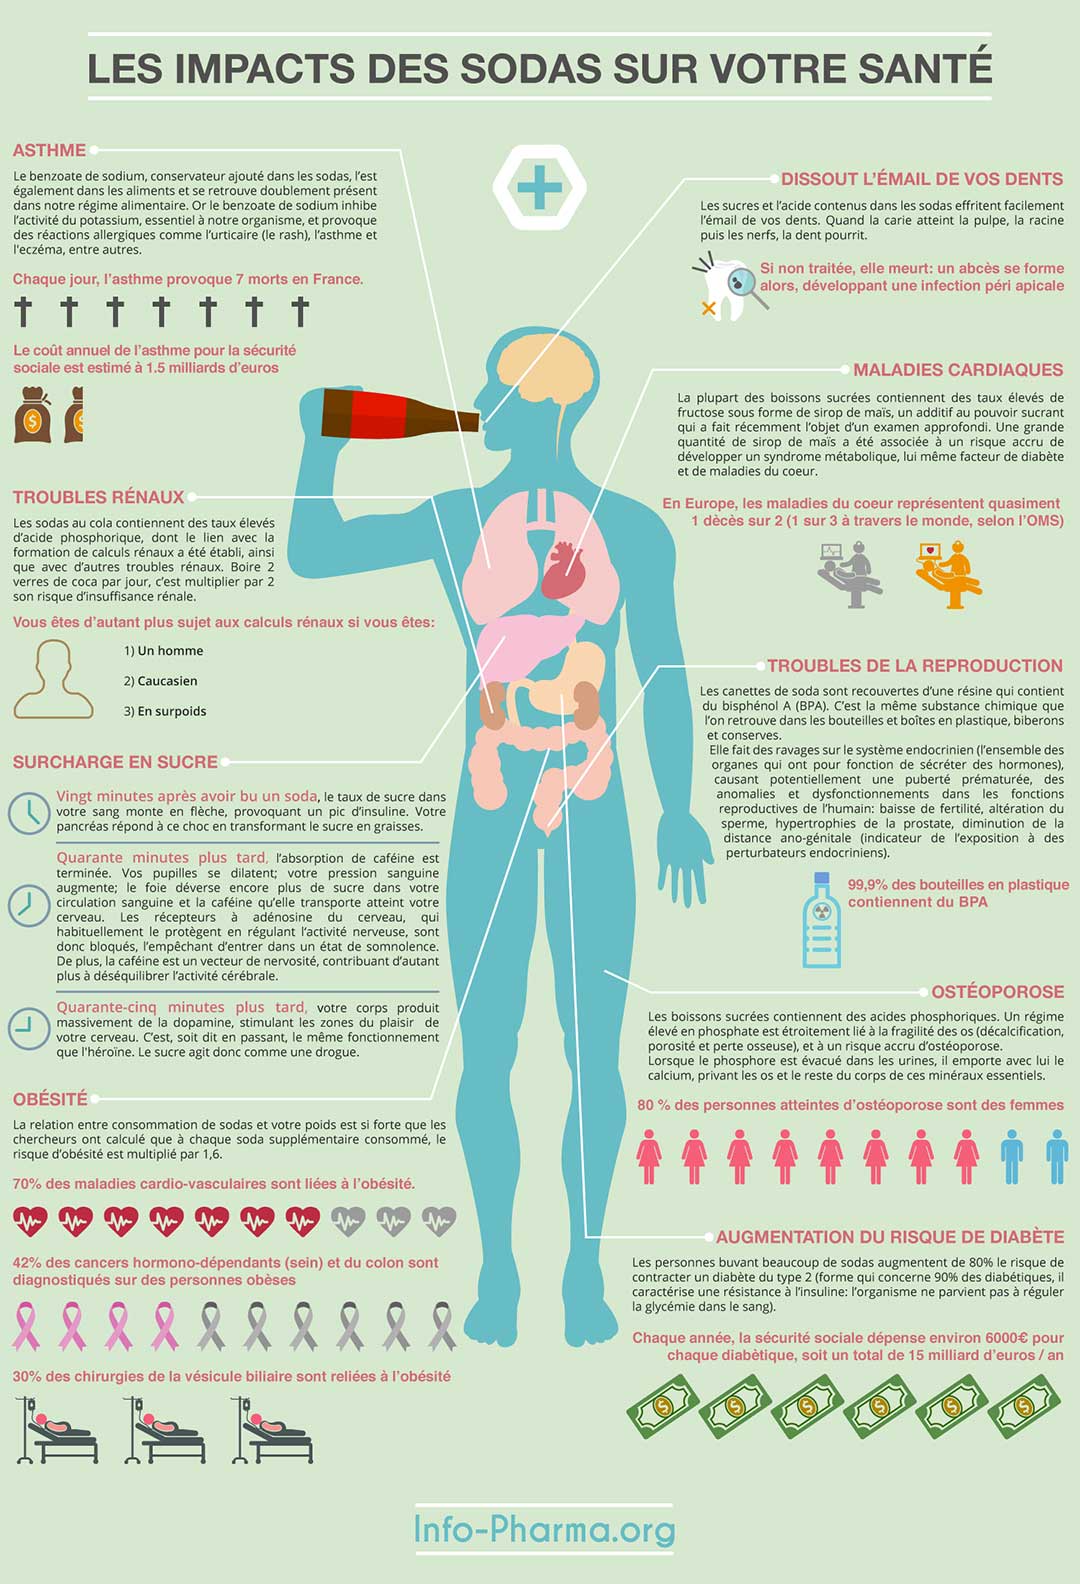 Les impacts des sodas sur votre santé (Source : info-pharma.org)